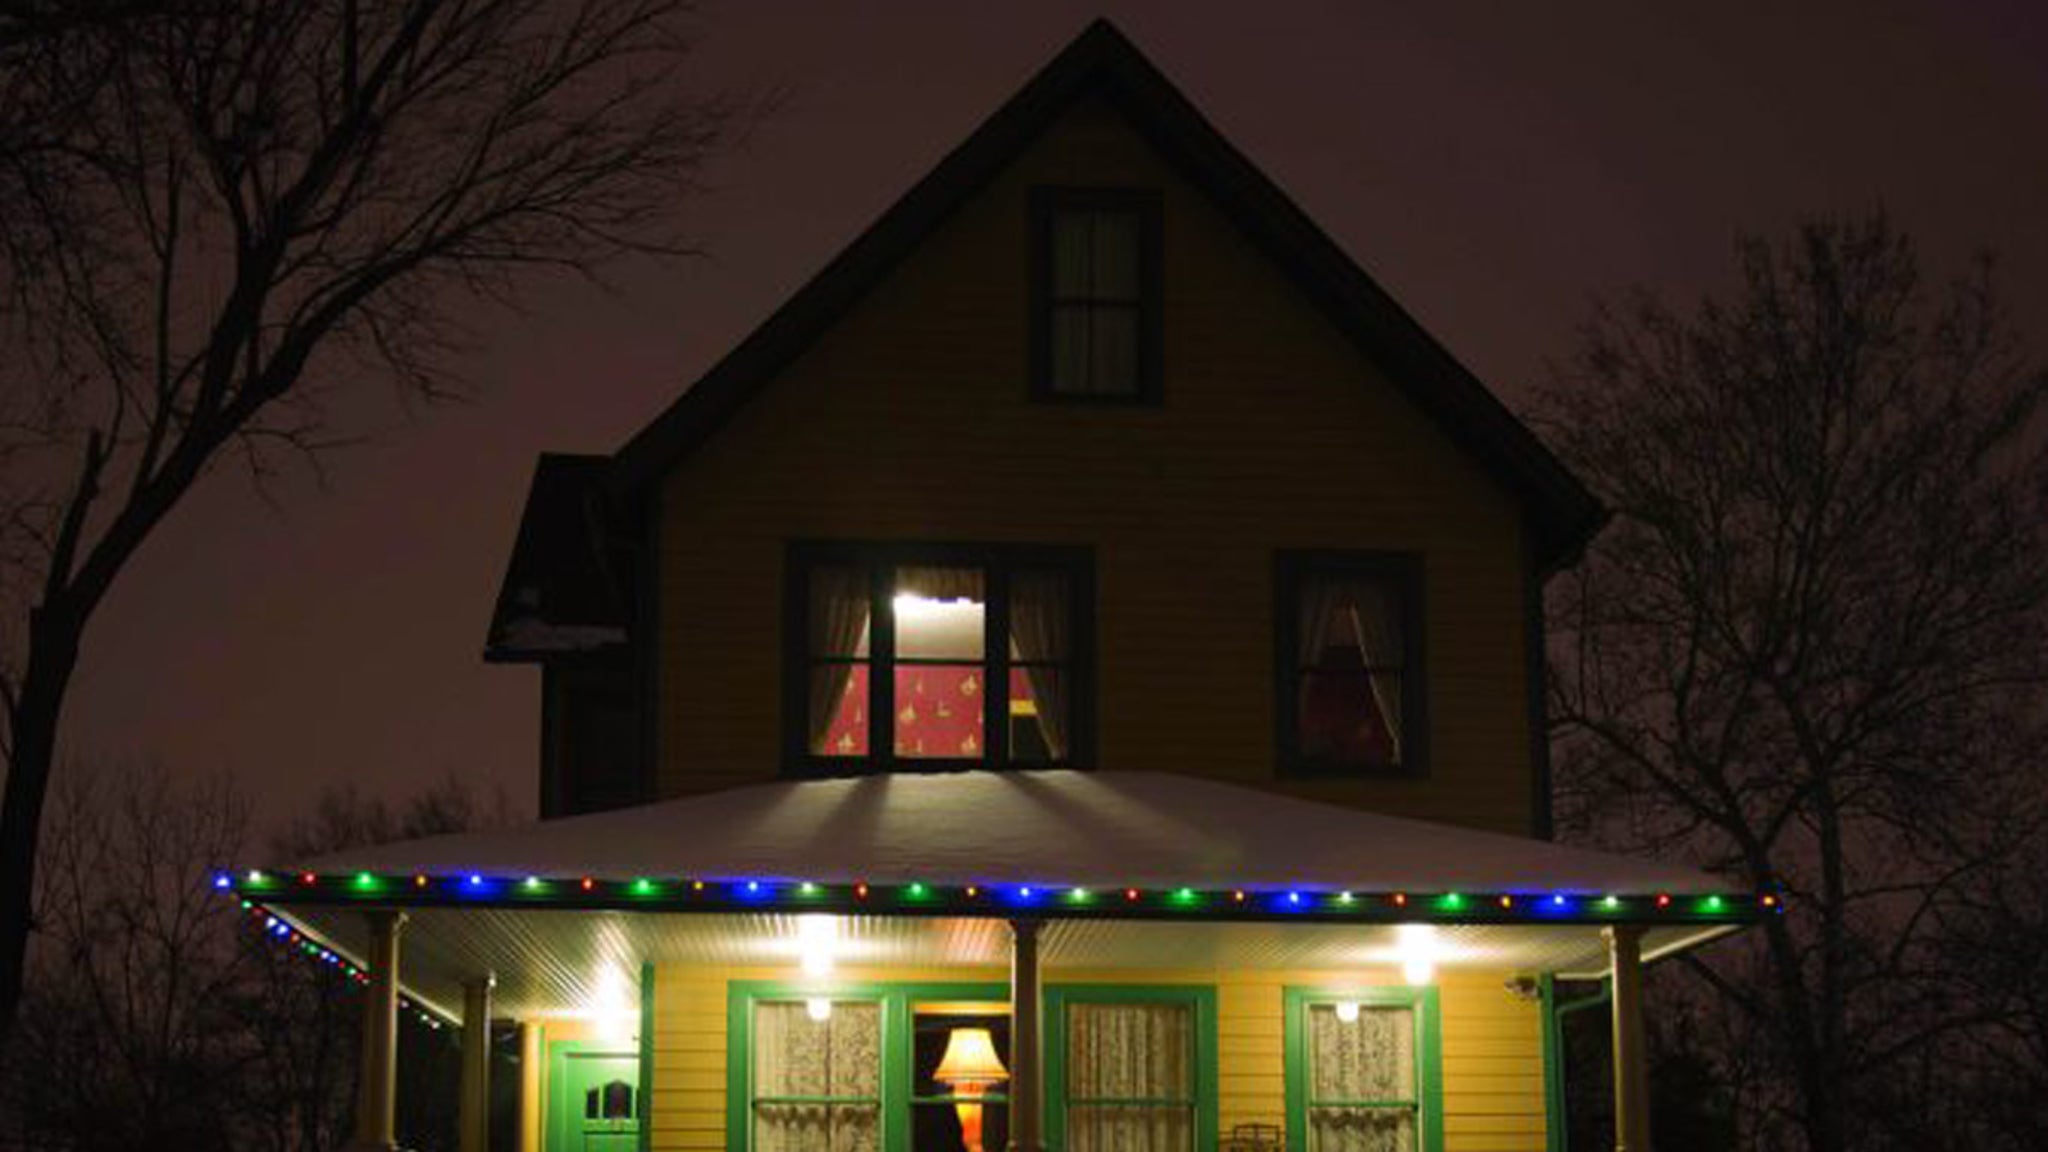 Gli attori di "Christmas Story" sono interessati ad acquistare l'iconica casa del film